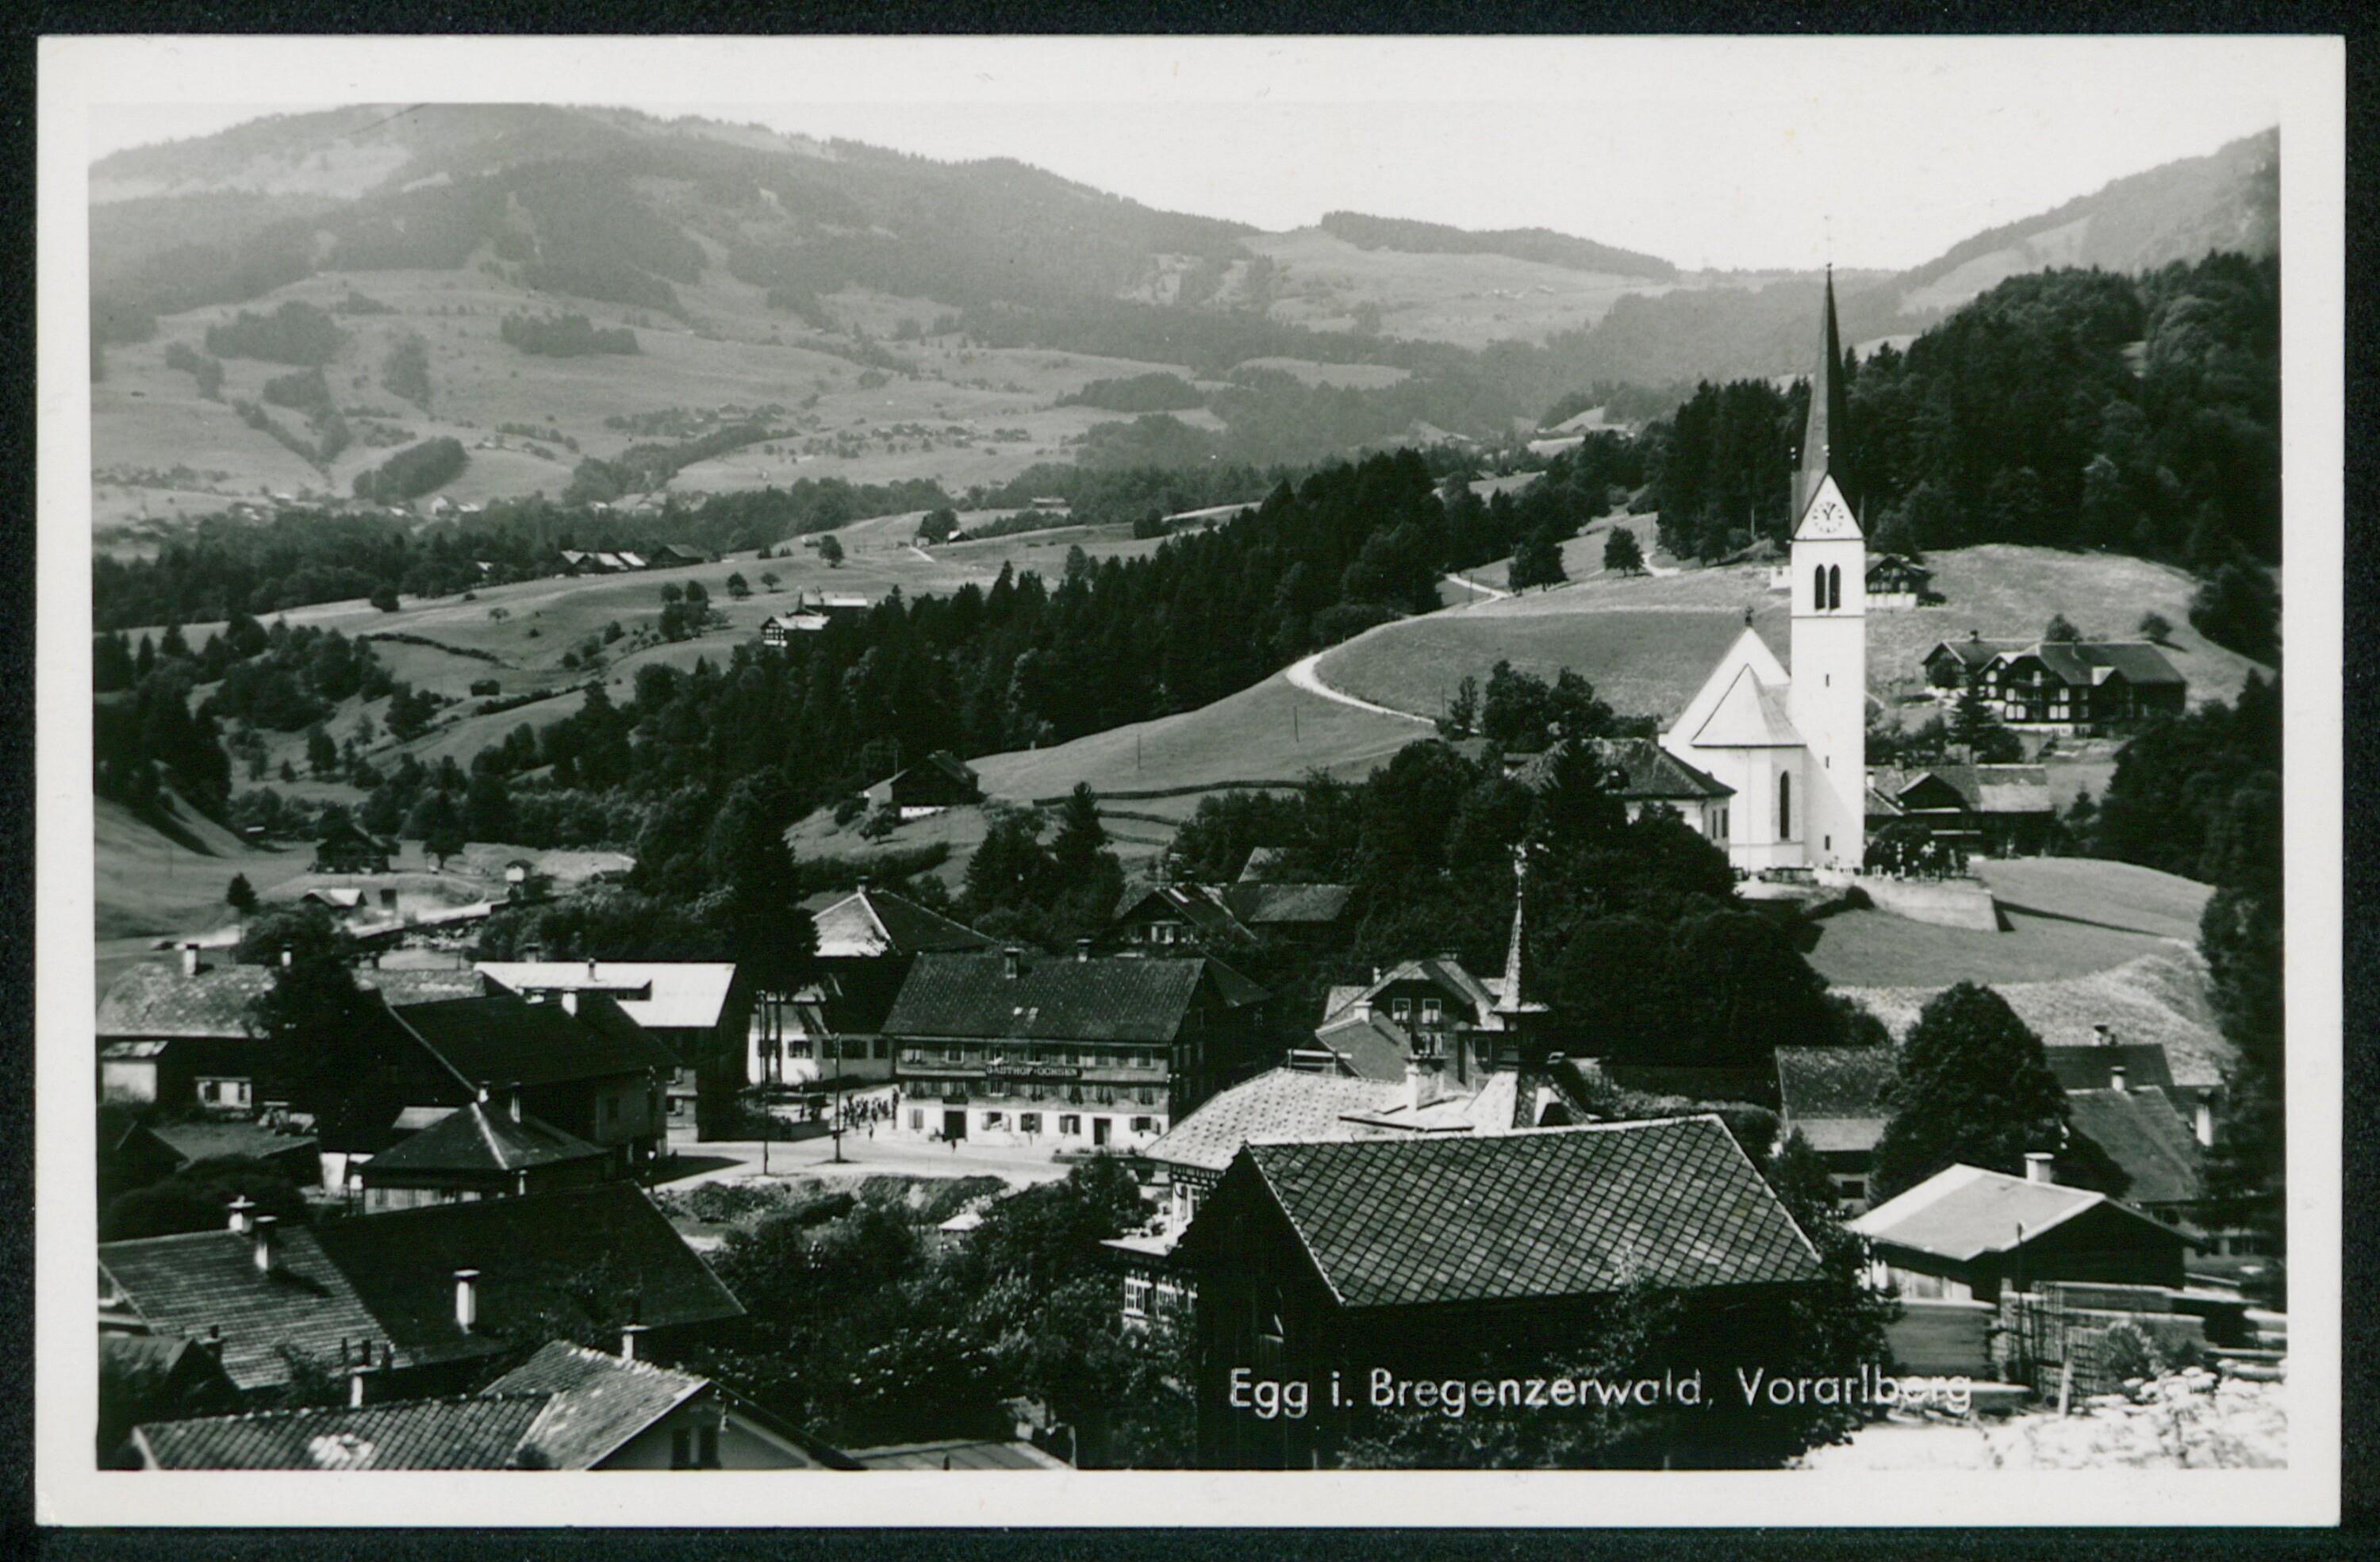 Egg i. Bregenzerwald, Vorarlberg></div>


    <hr>
    <div class=